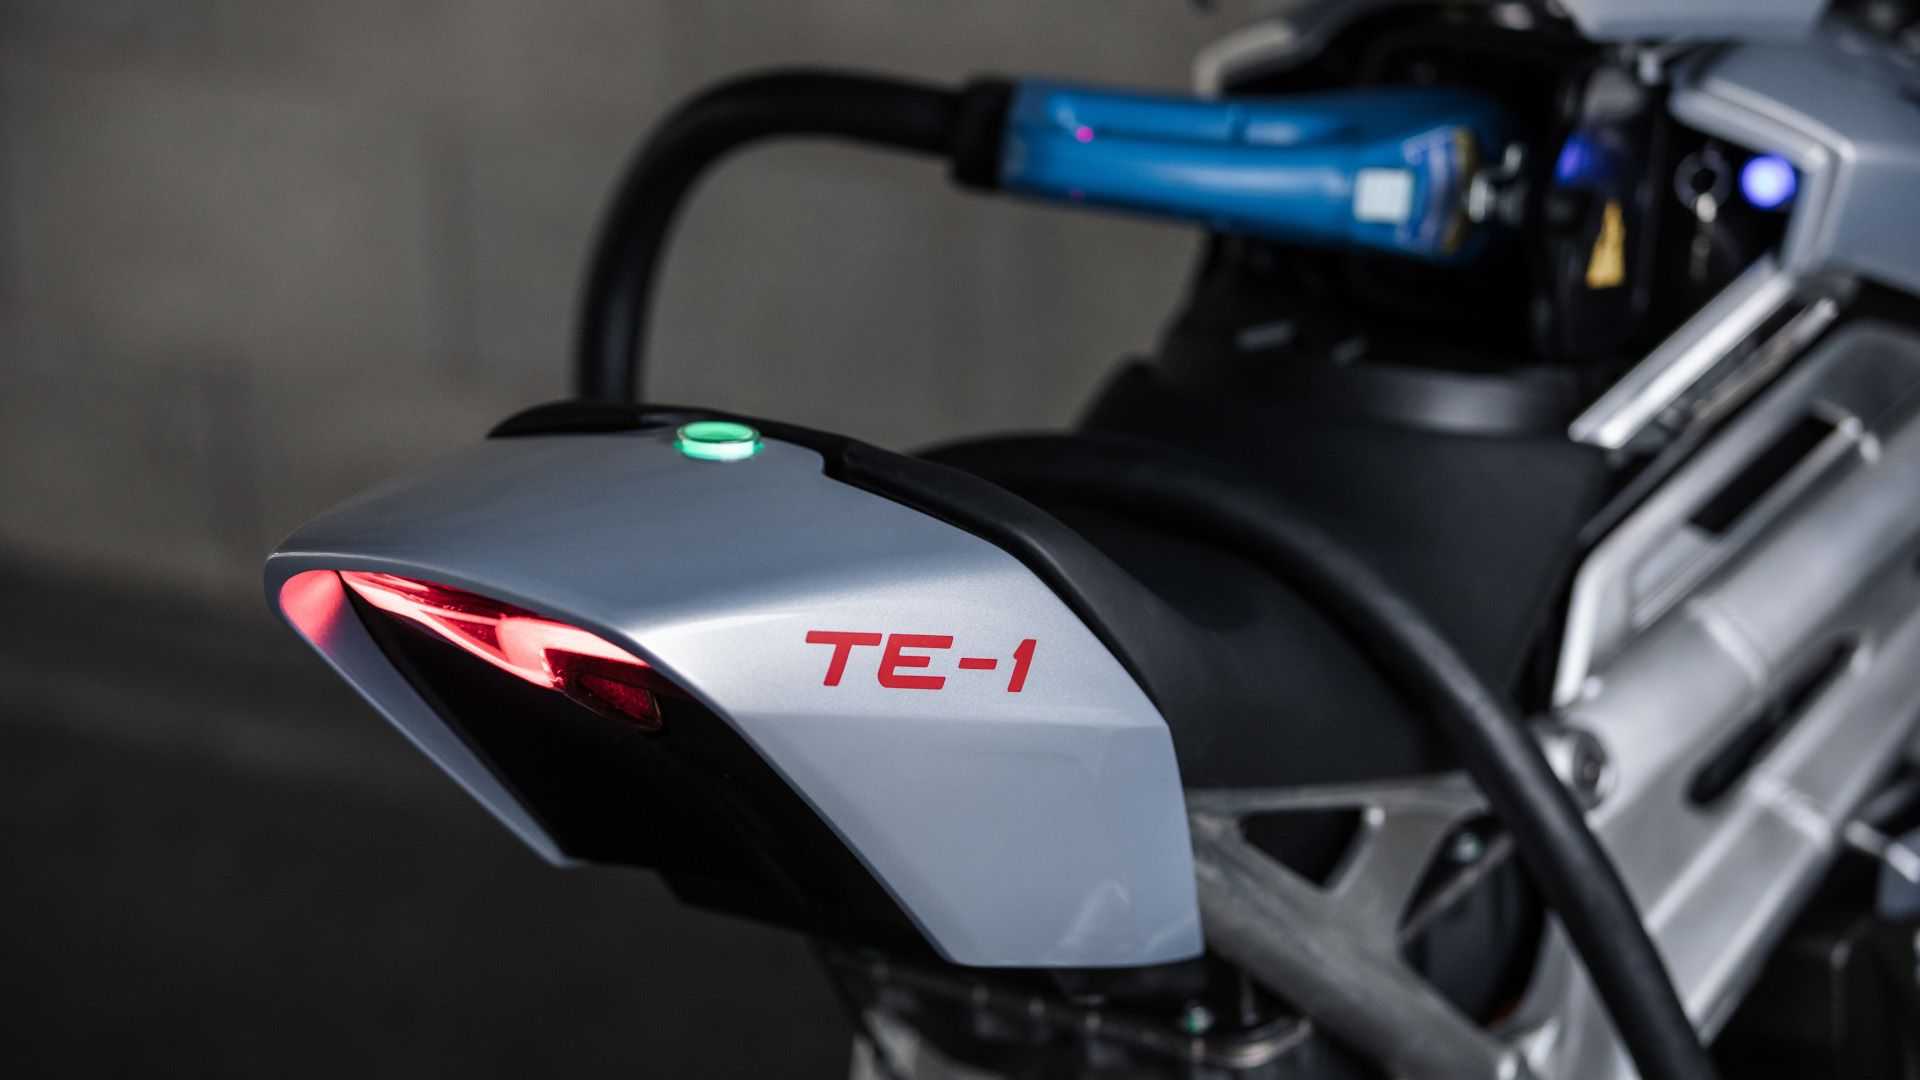 موتورسیکلت الکتریکی ترایومف TE-1 معرفی شد +تصاویر